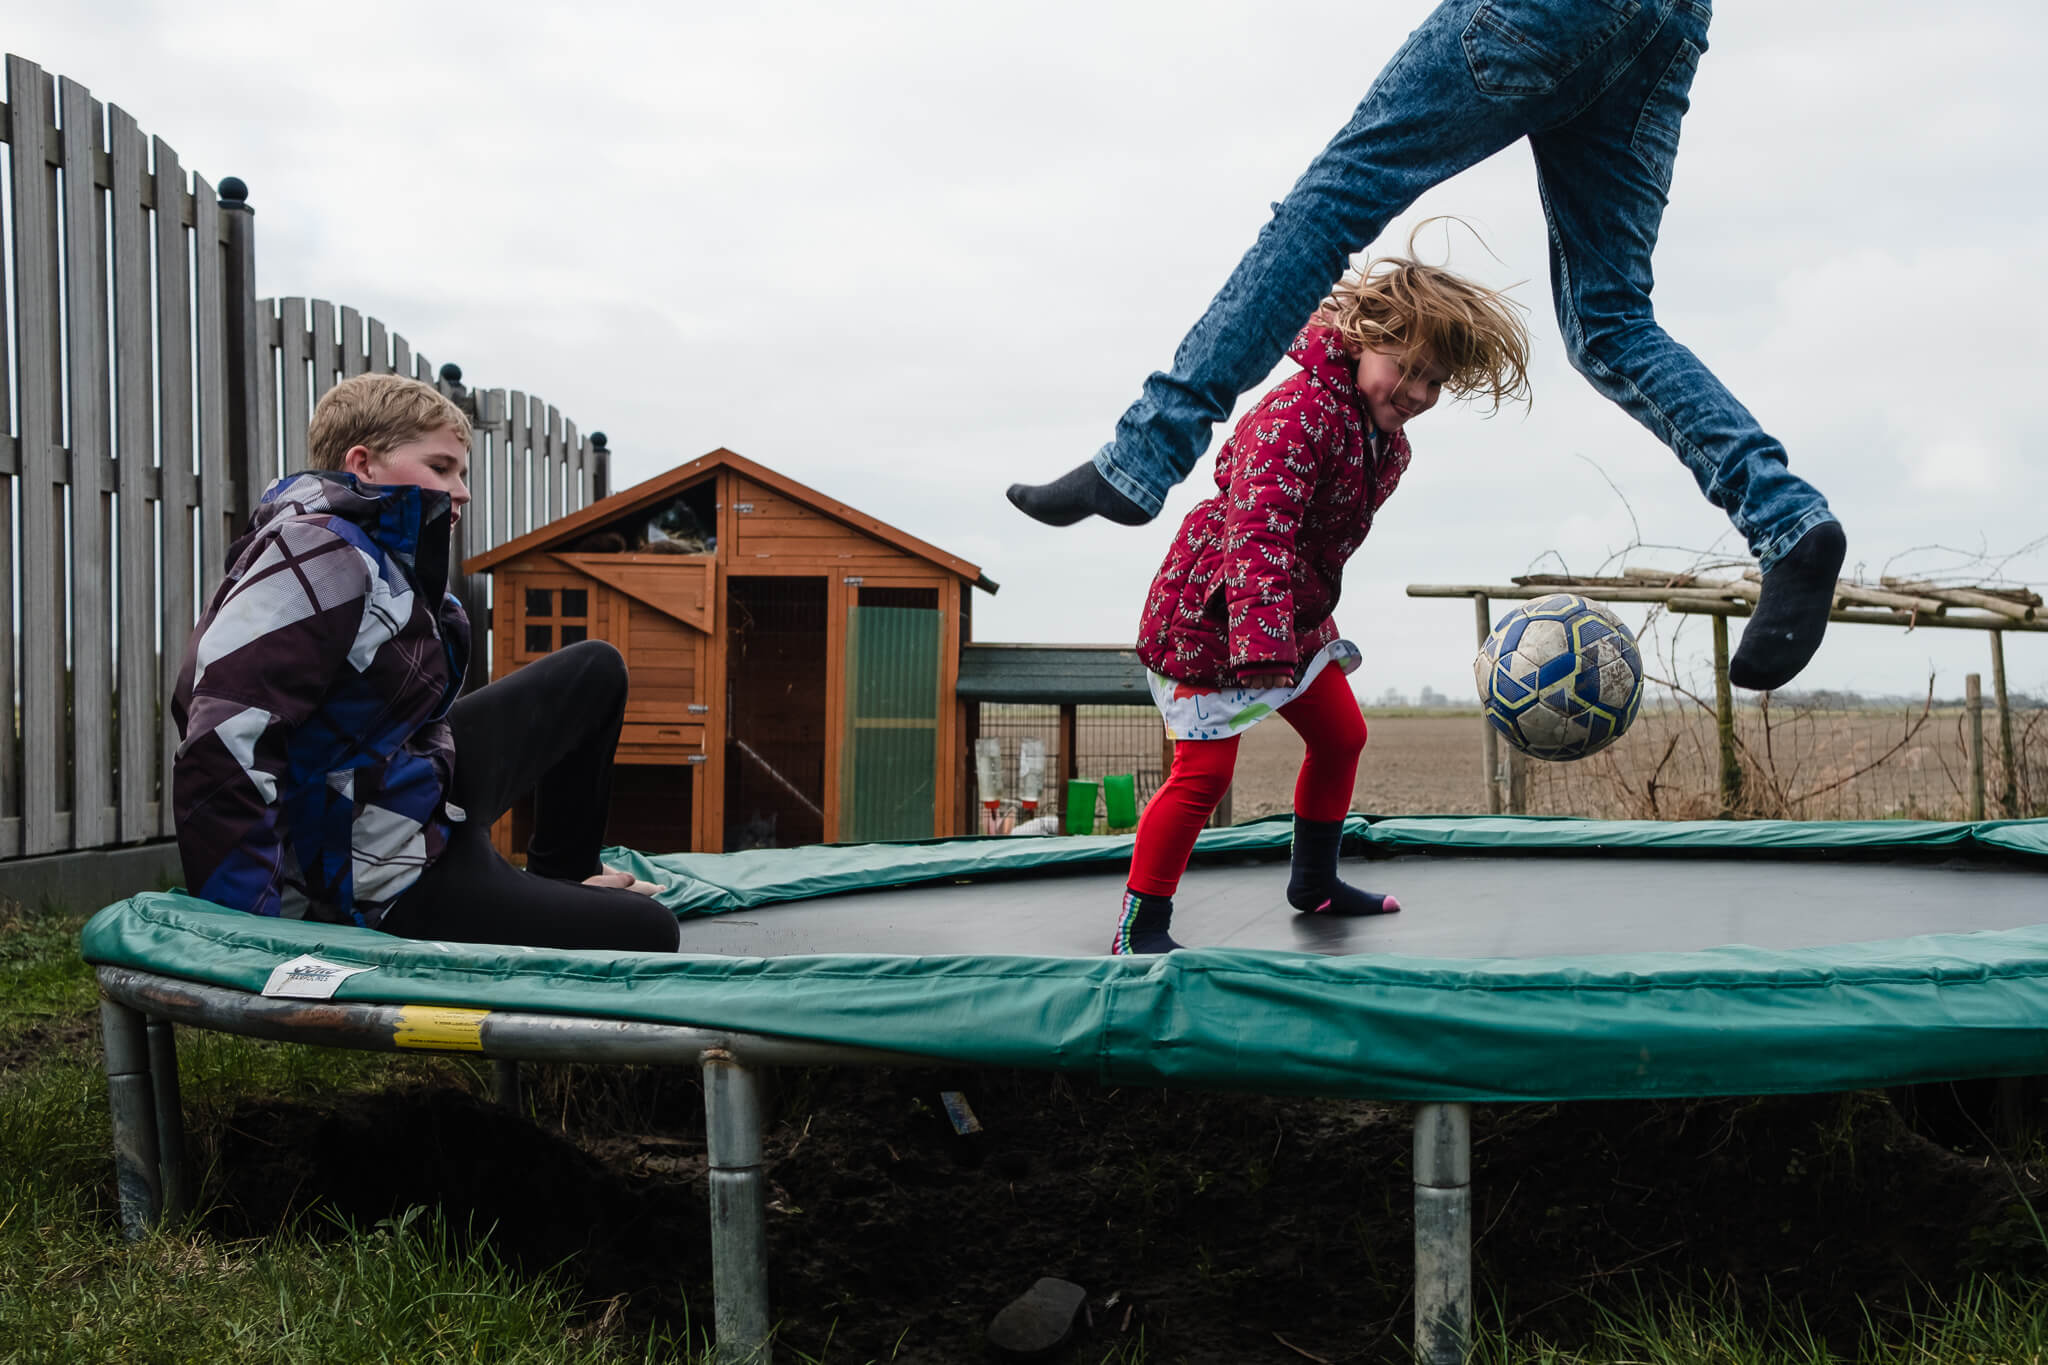 kinderen spelen buiten op de trampoline, documentaire familiefotografie